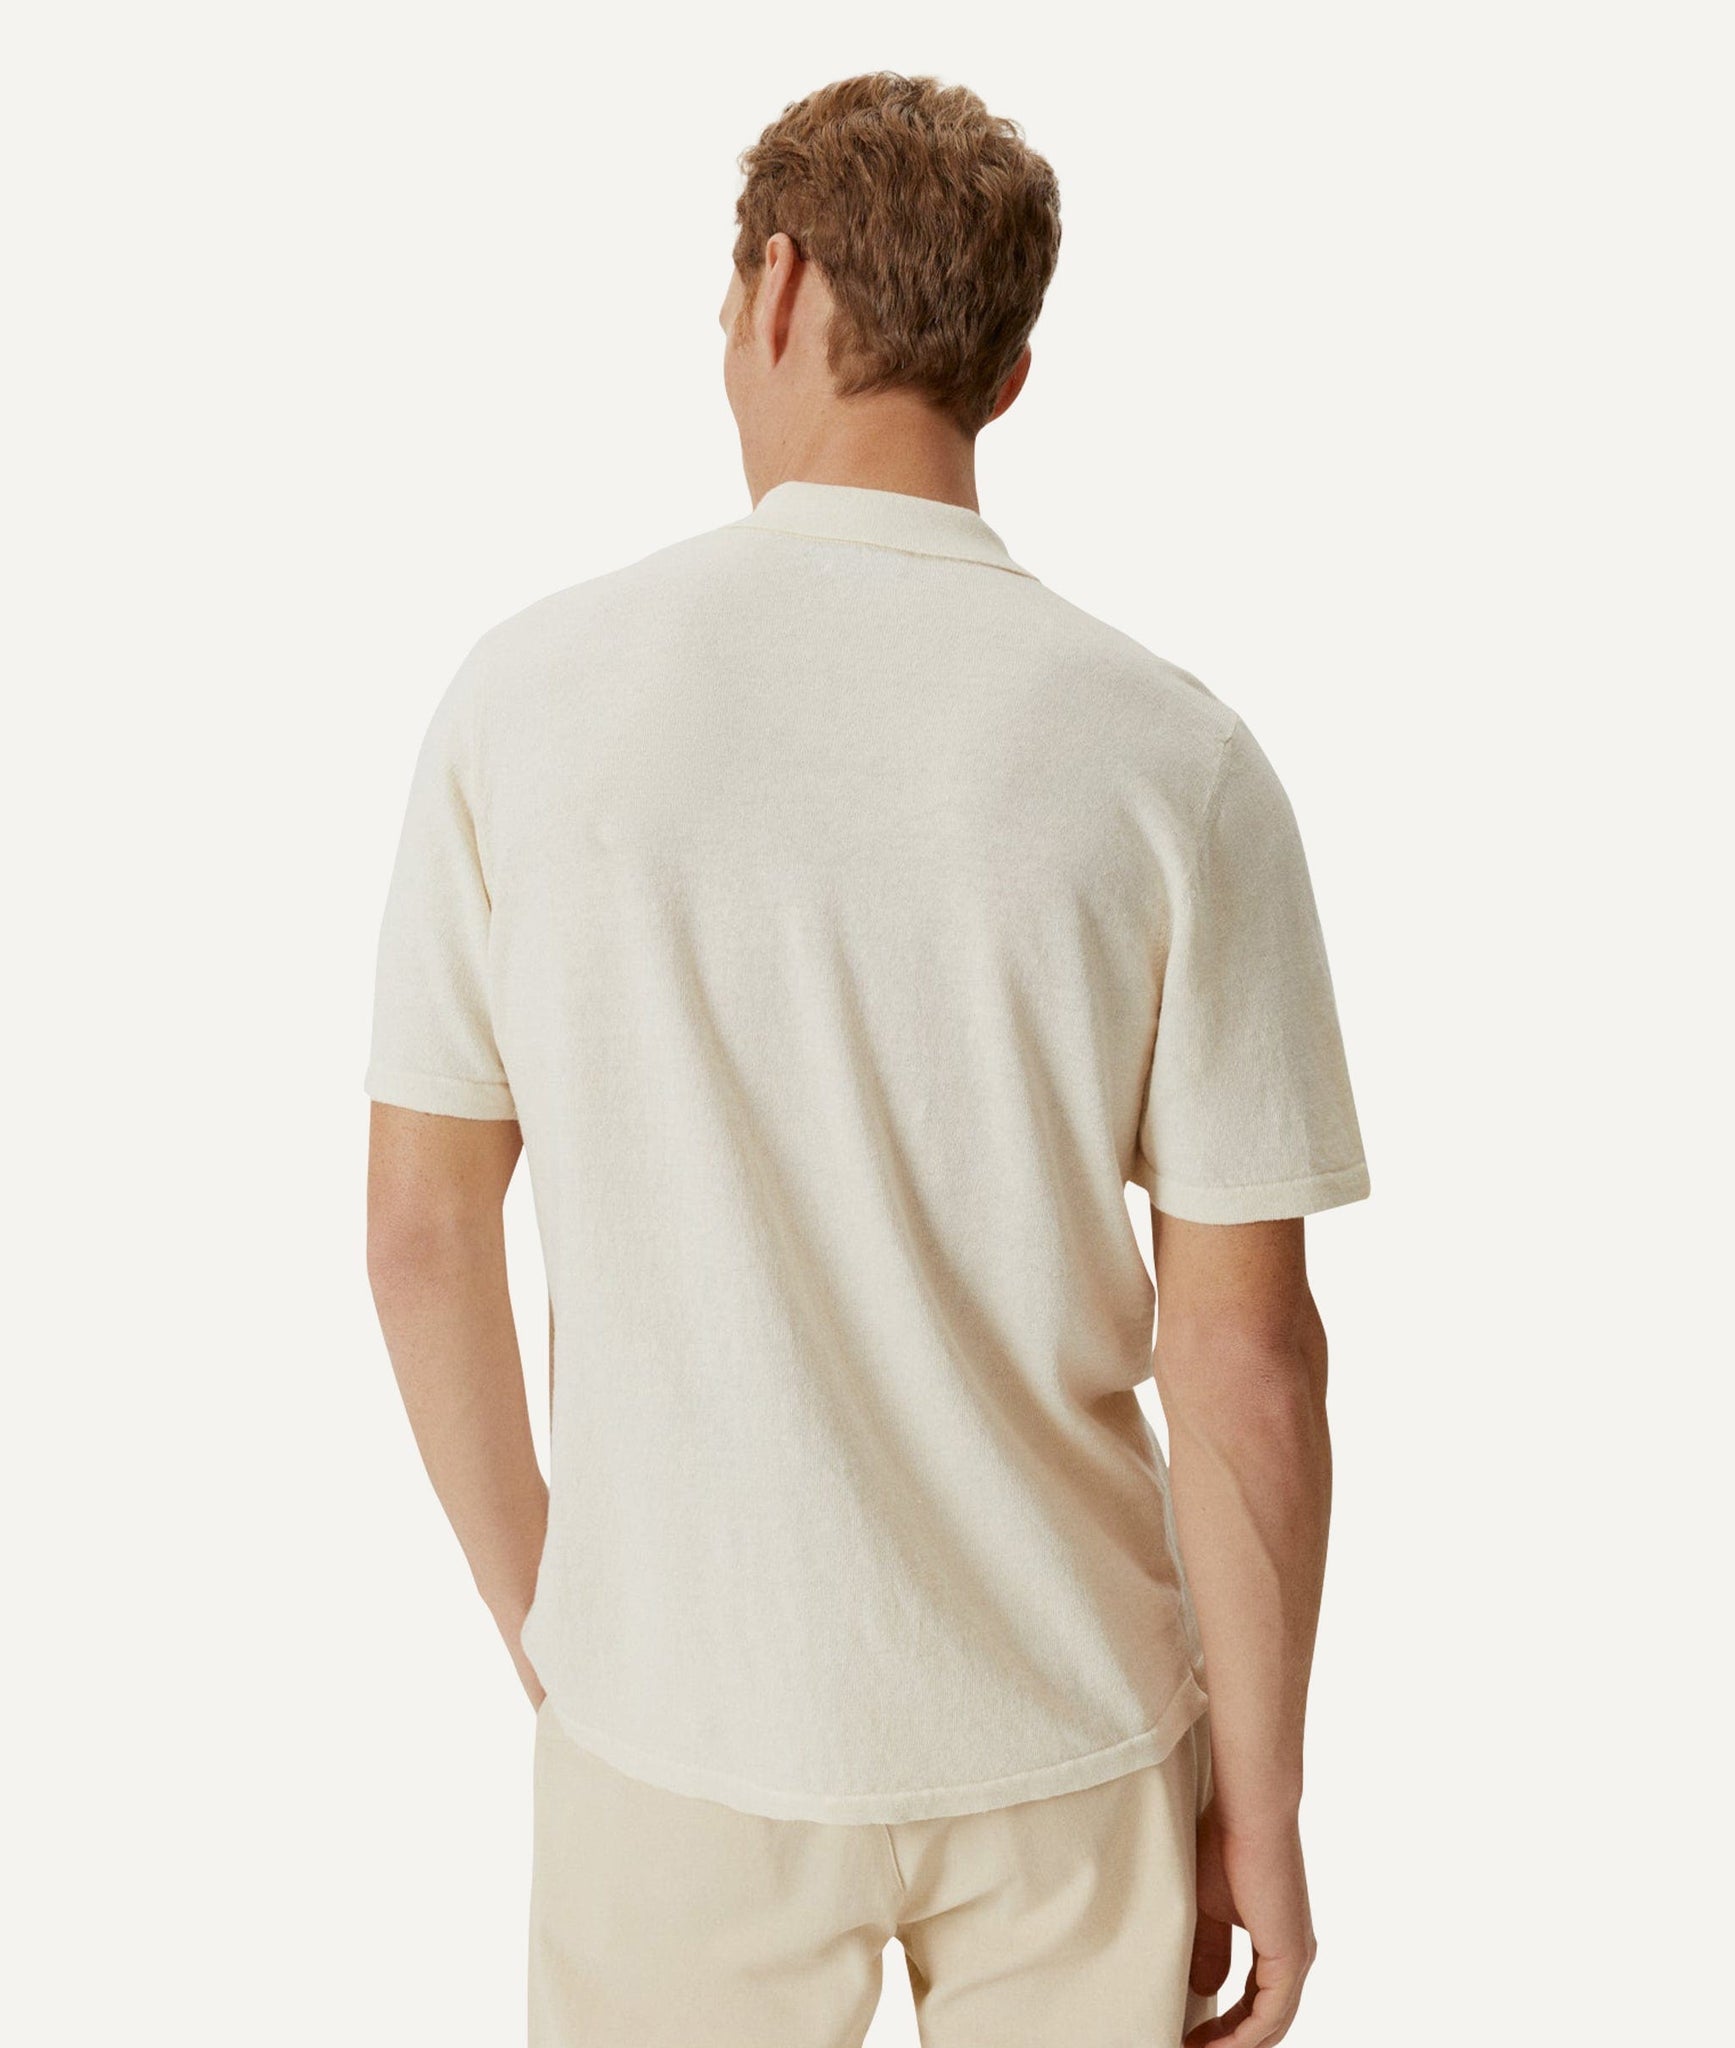 The Linen Cotton Short Sleeve Shirt